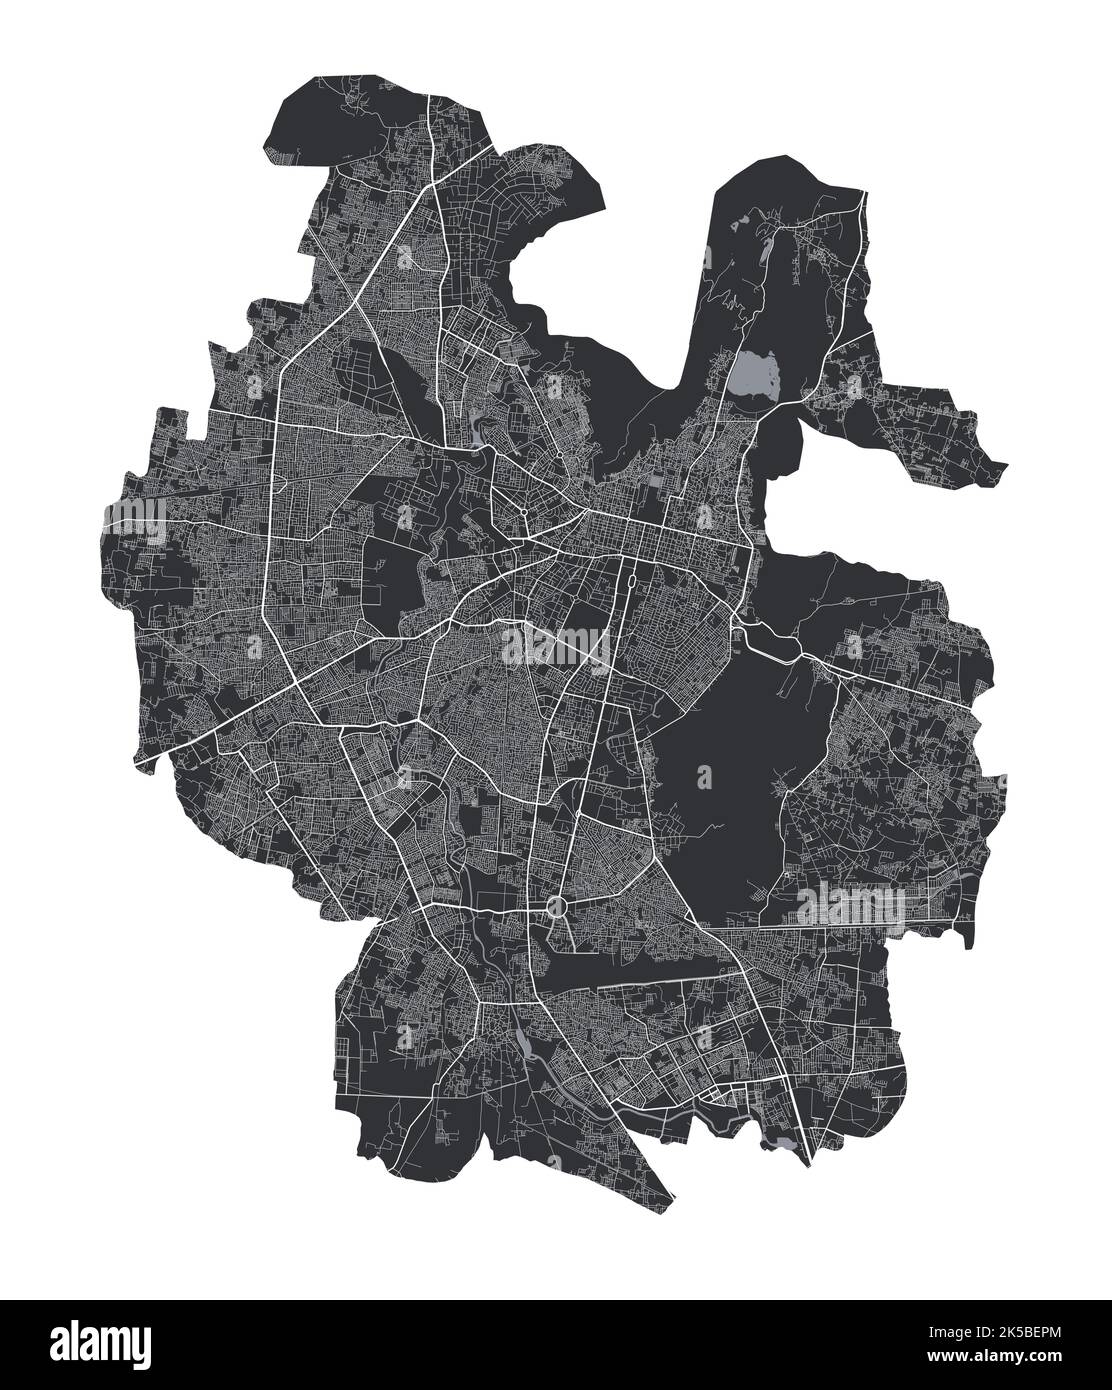 Jaipur mappa. Mappa vettoriale dettagliata dell'area amministrativa della città di Jaipur. Poster sulla città con vista metropolitana dell'aria. Terra nera con strade e viali bianchi. Illustrazione Vettoriale